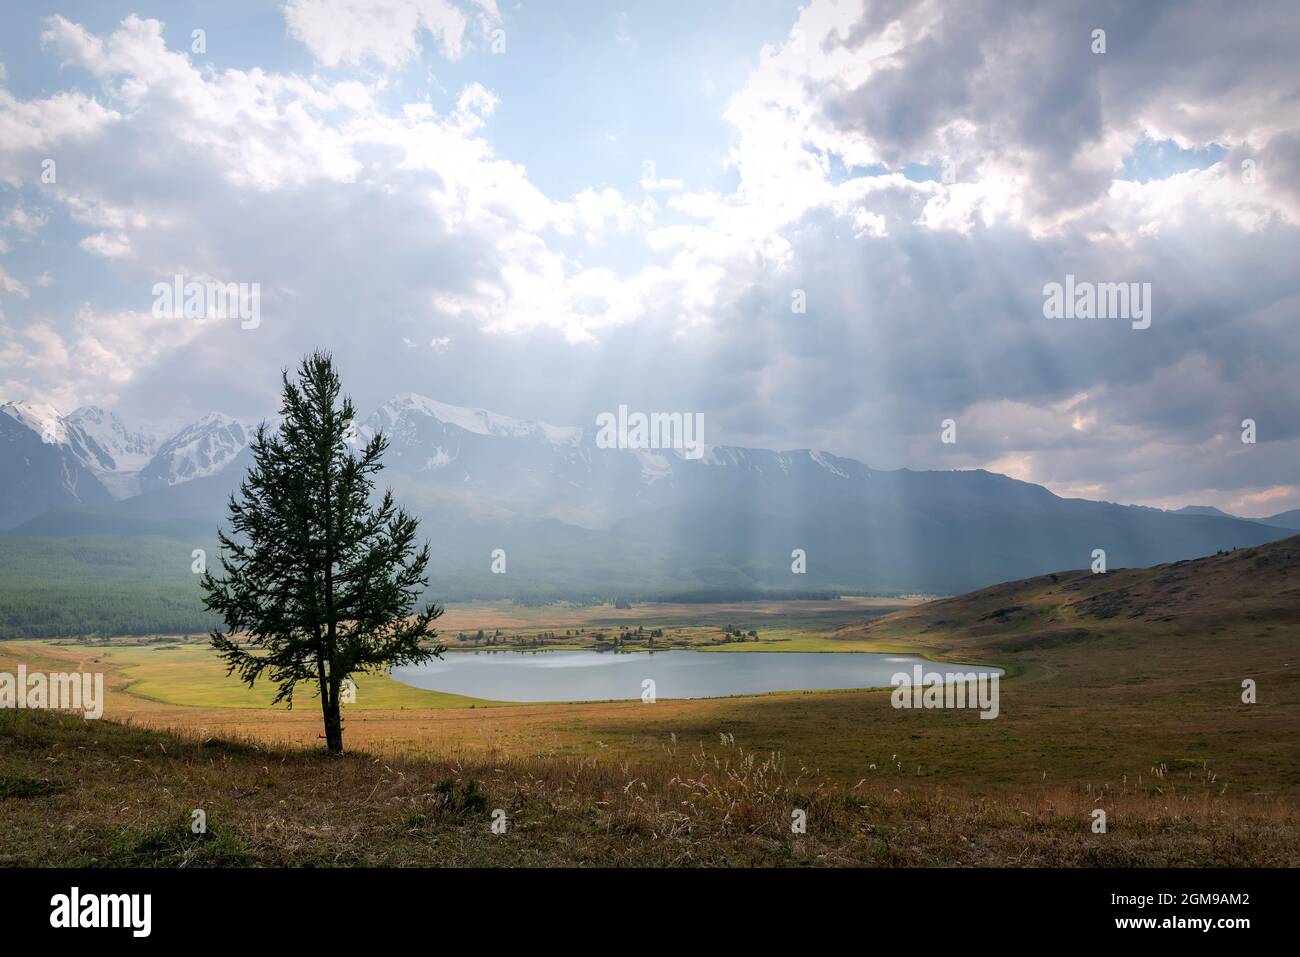 Splendida vista con raggi di sole e luce attraverso le nuvole sul lago, montagne coperte di neve e foresta e larice in primo piano. Altai, Foto Stock